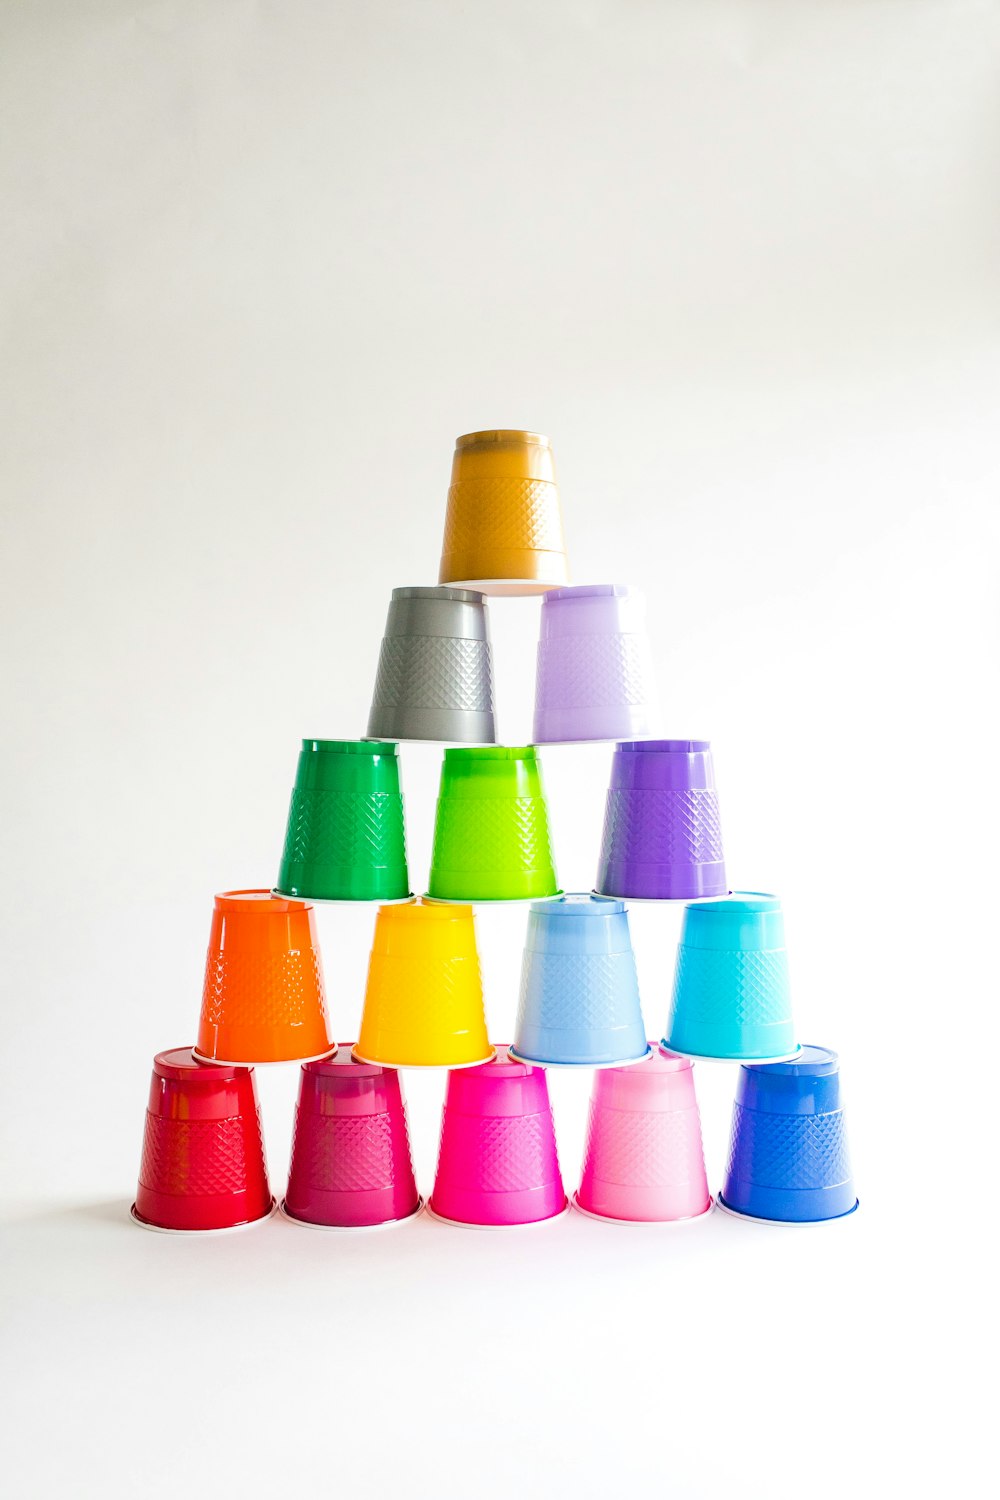 형형색색의 컵들이 서로 겹쳐져 놓여 있다